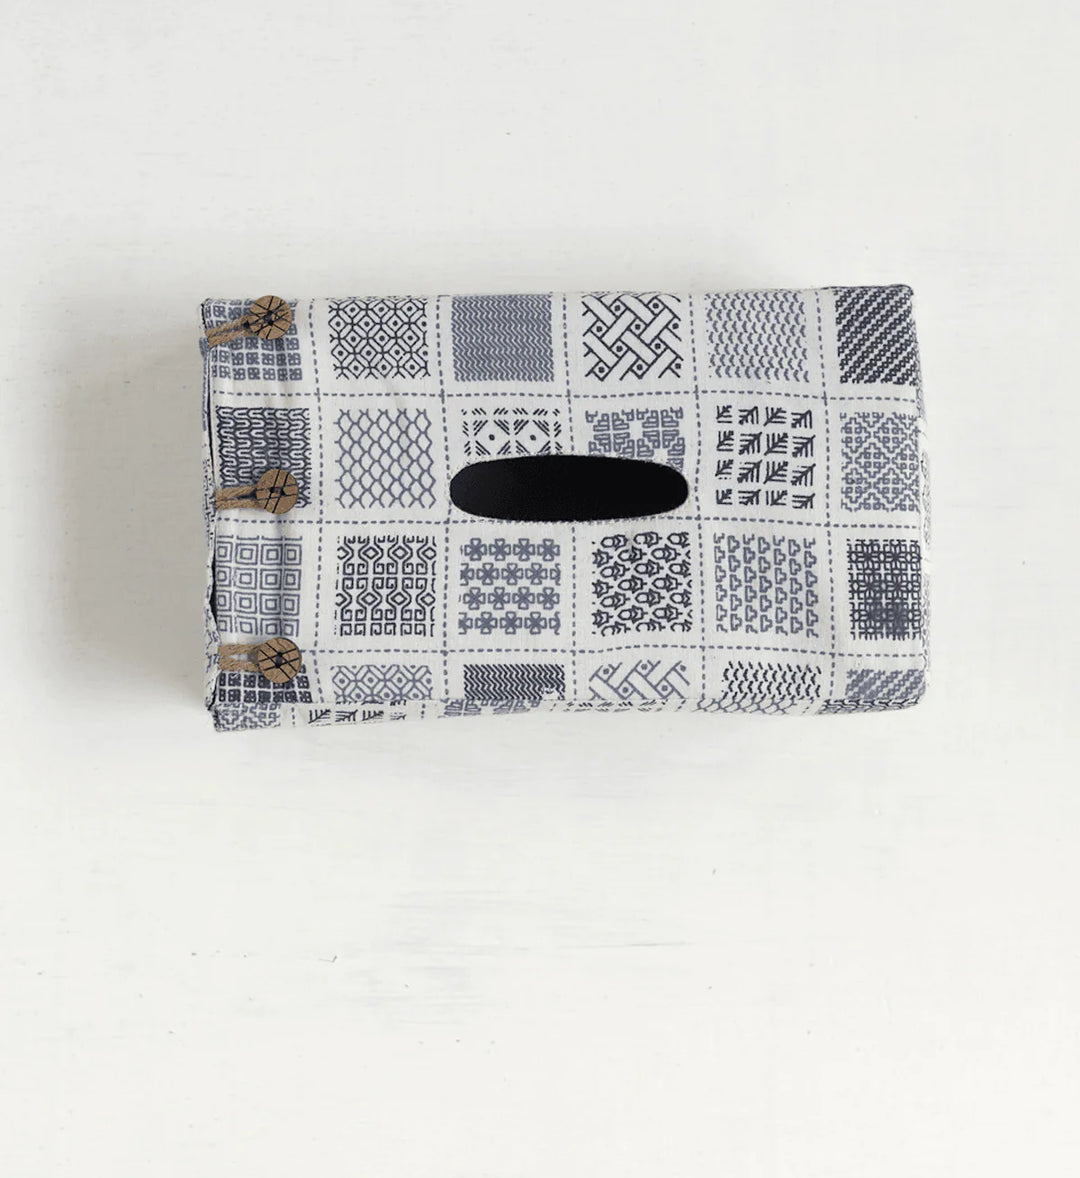 Whimsical Printed Tissue Box | Hulya Tissue Box - White & Charcoal